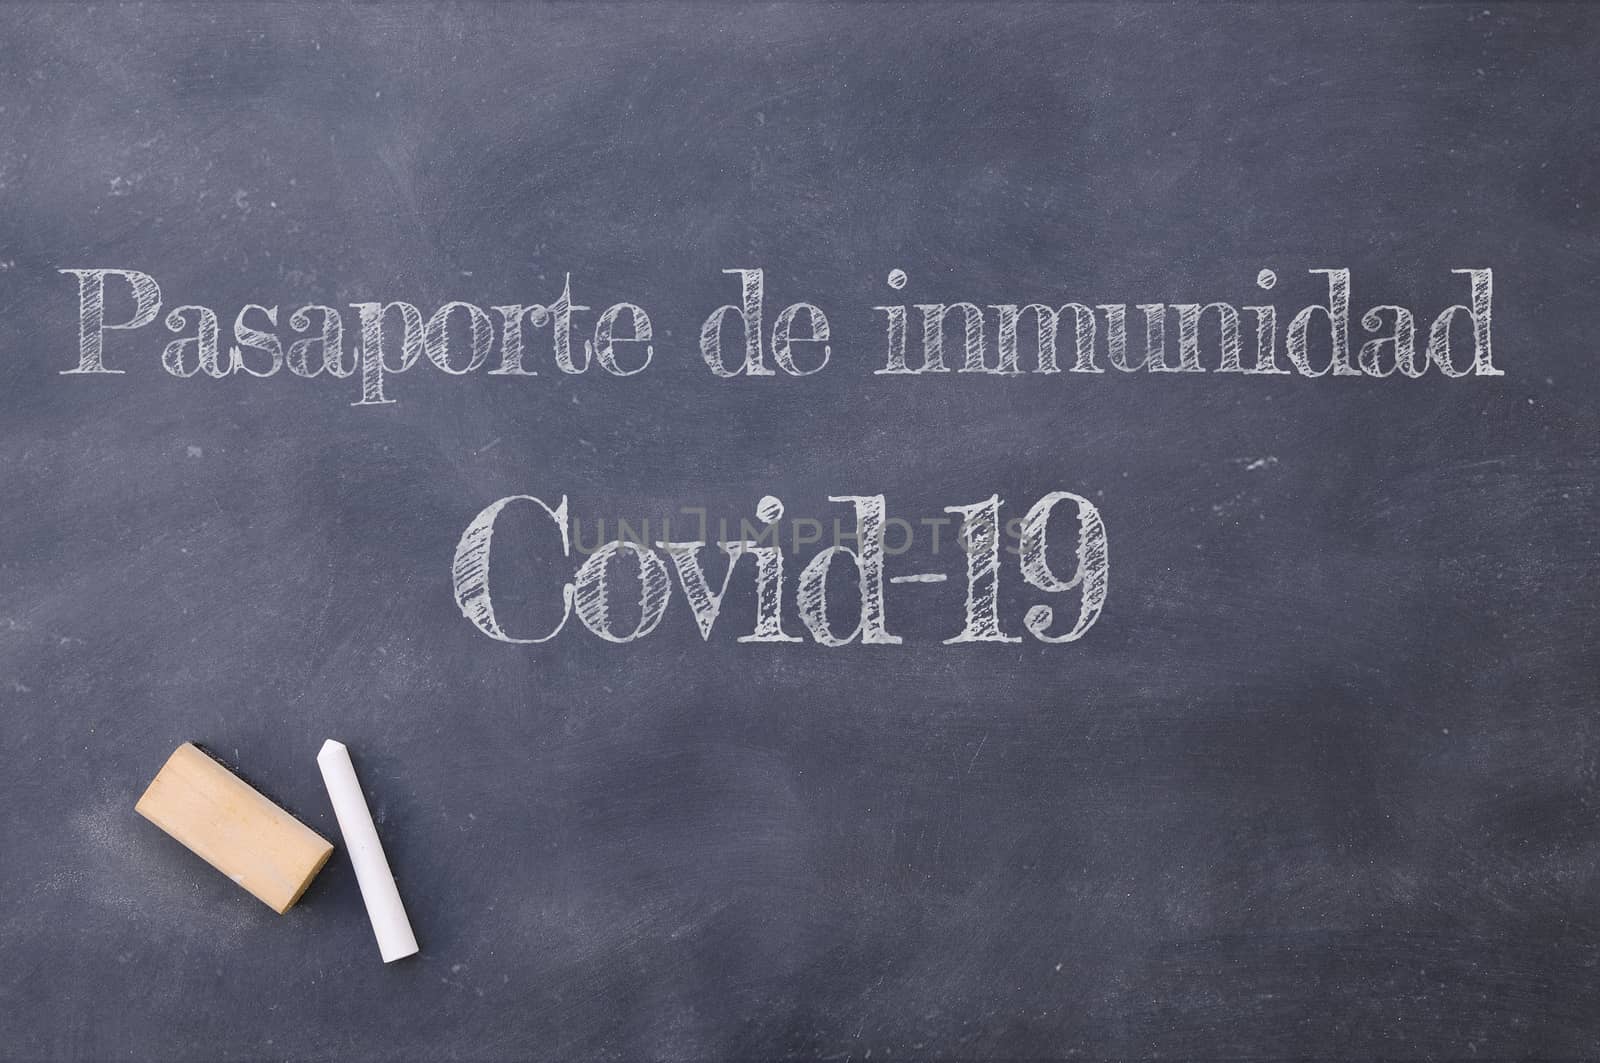 Covid-19 immunity passport written in Spanish. by CreativePhotoSpain